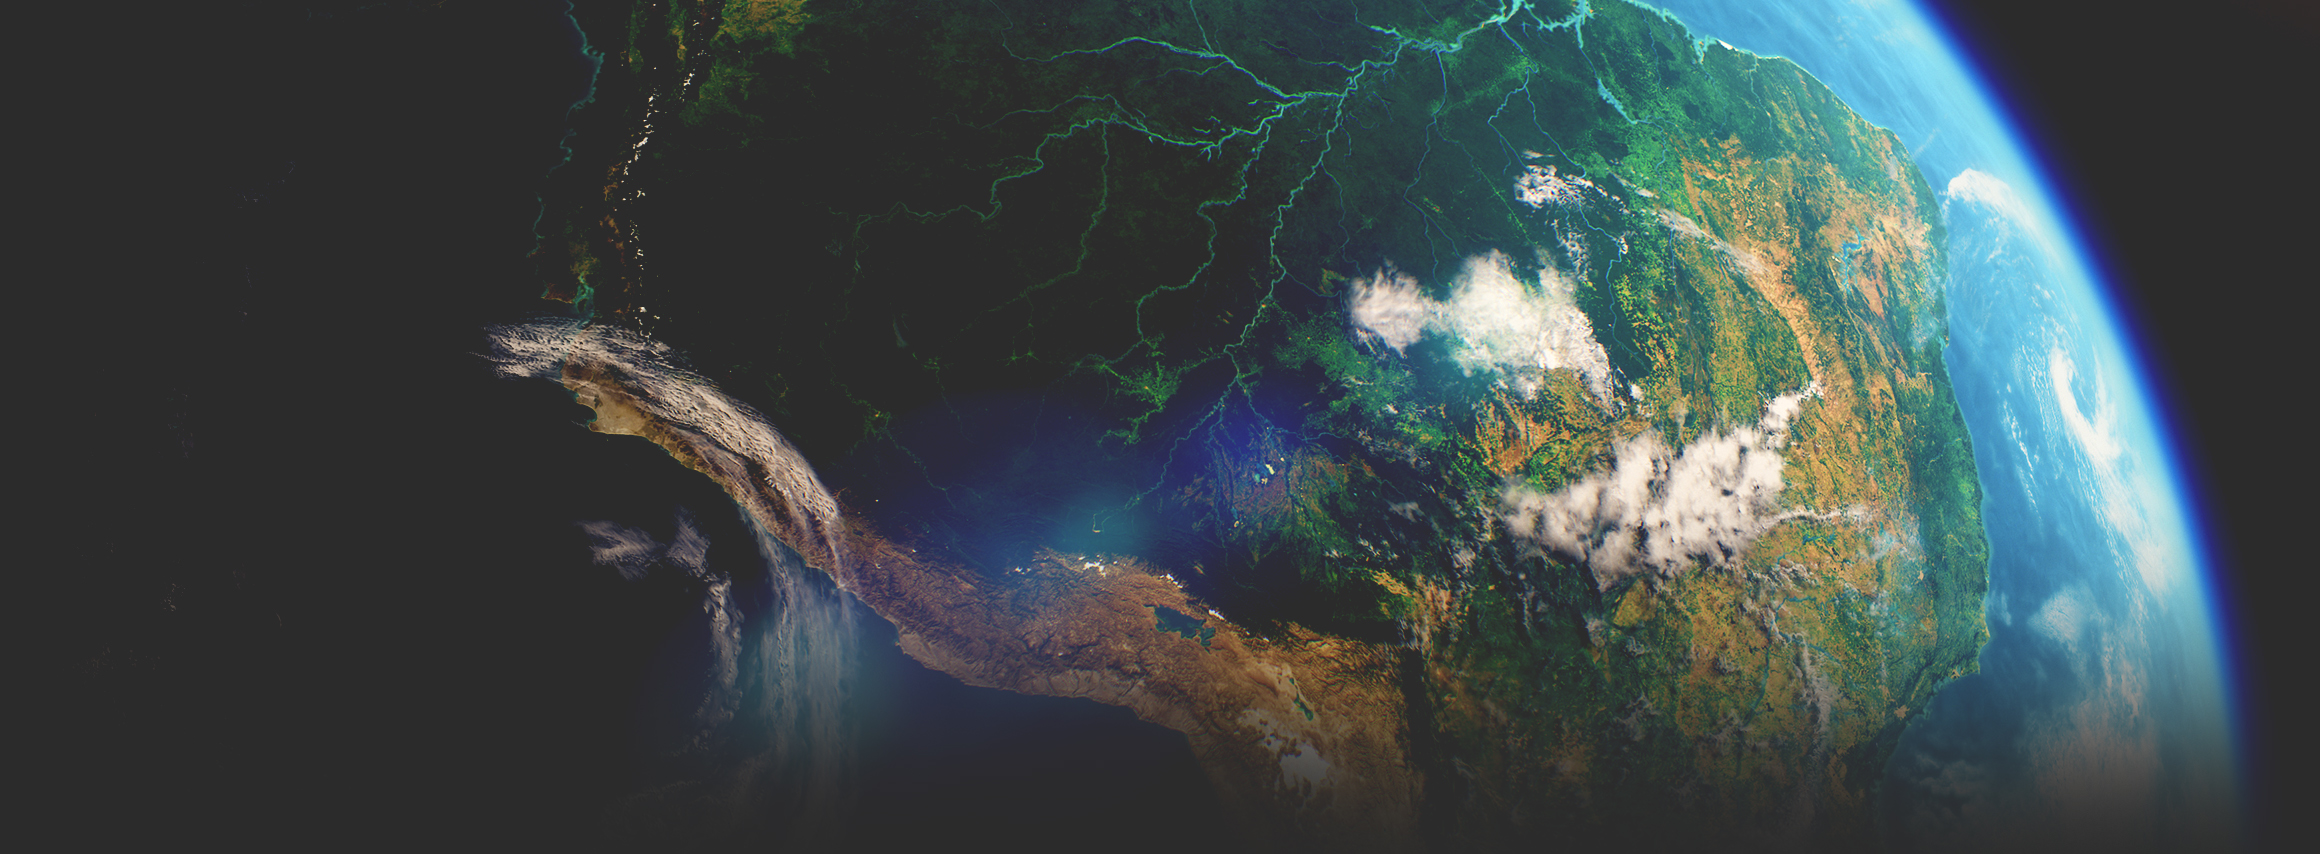 宇宙から撮影された衛星画像に、川が流れている緑の大陸、海洋、および大気が表示されている